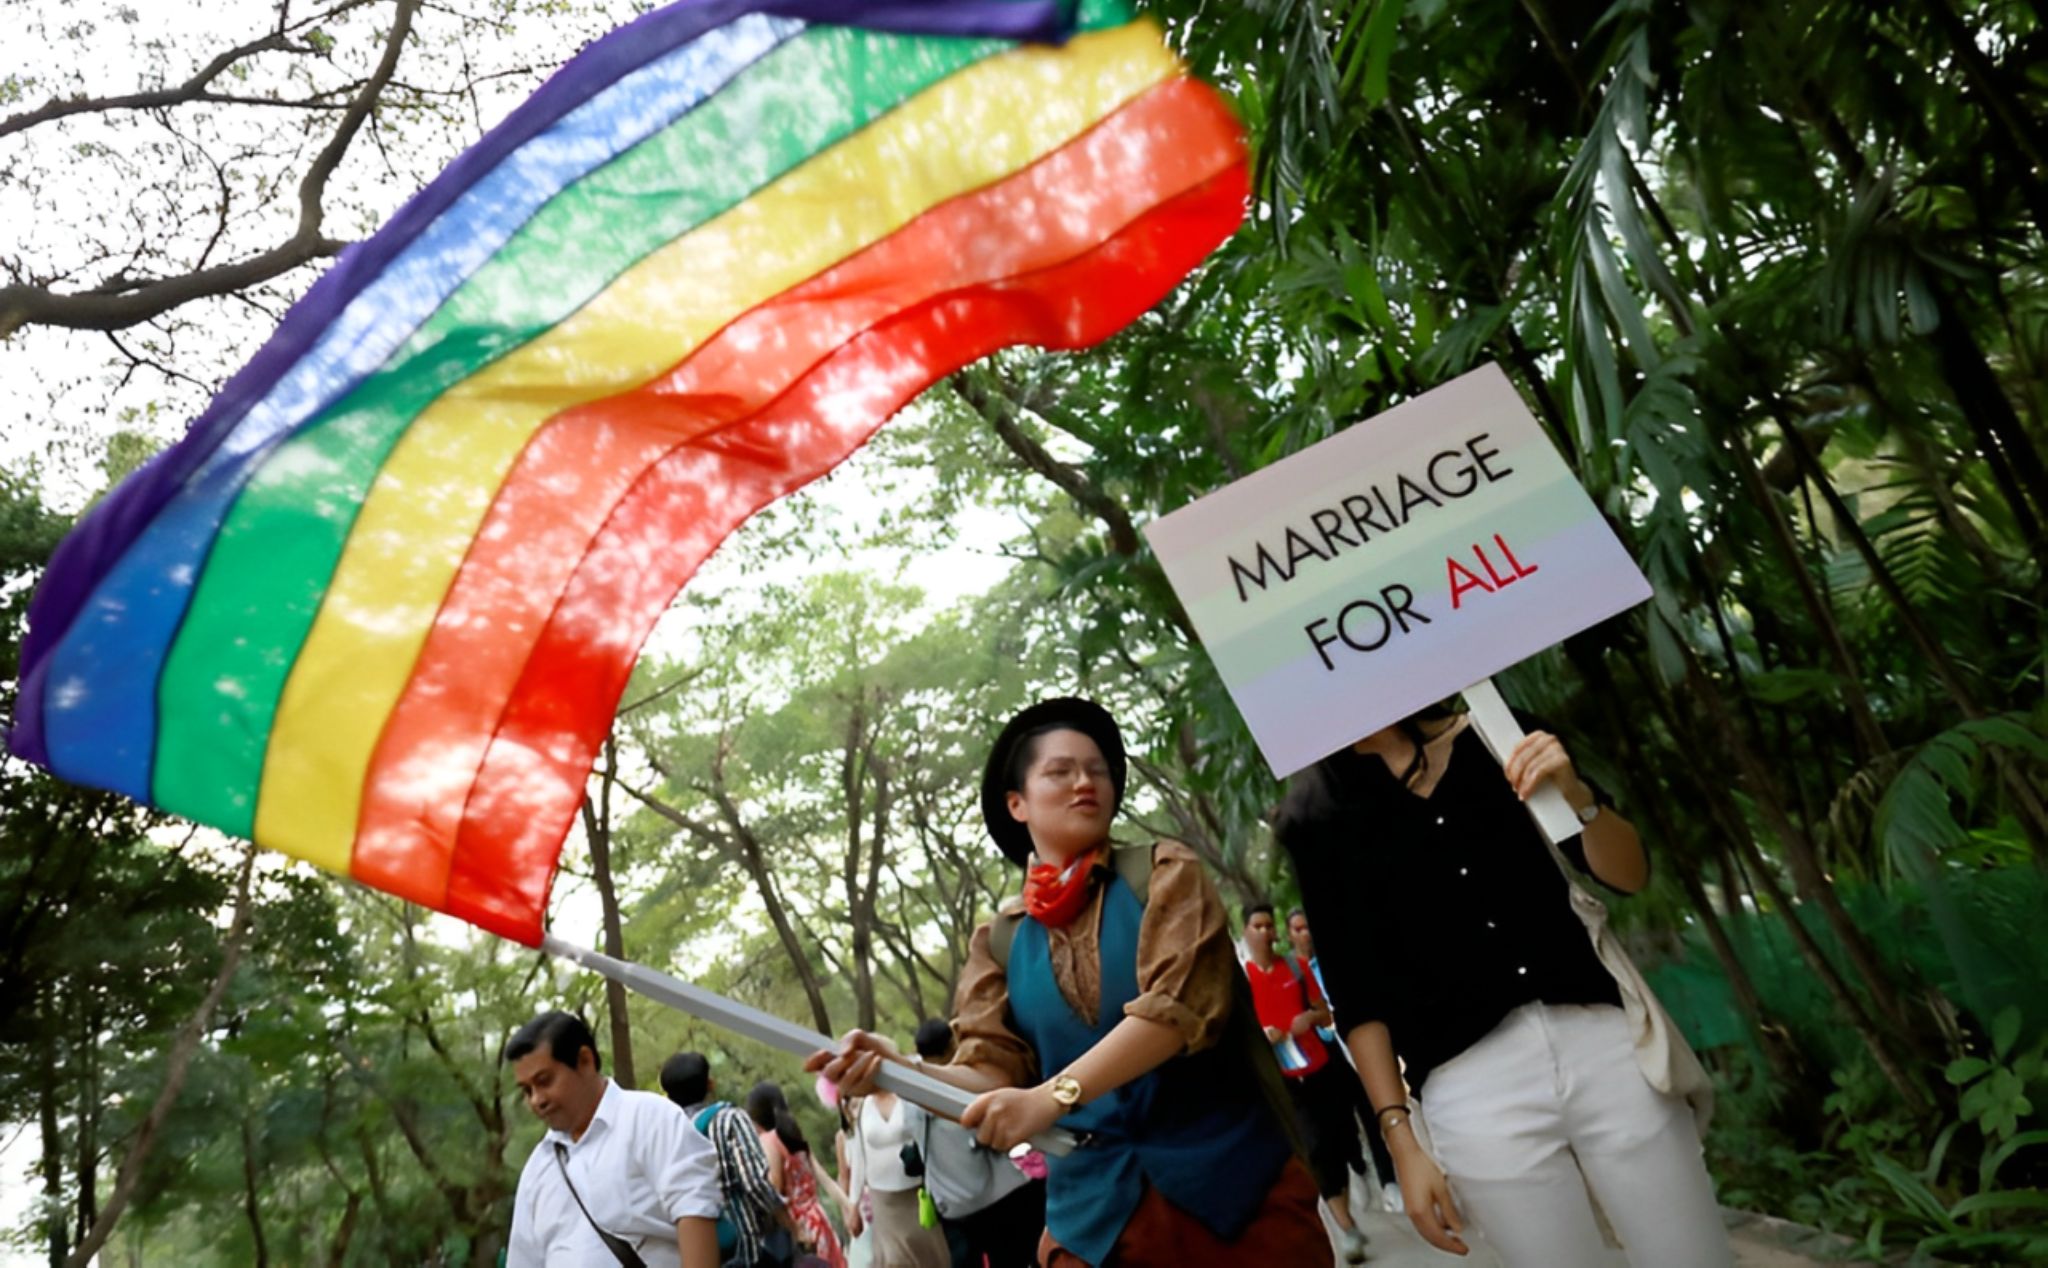 phailamgi_Thái Lan trở thành nước đầu tiên ở Đông Nam Á hợp pháp hóa hôn nhân đồng giới chuyện...jpg